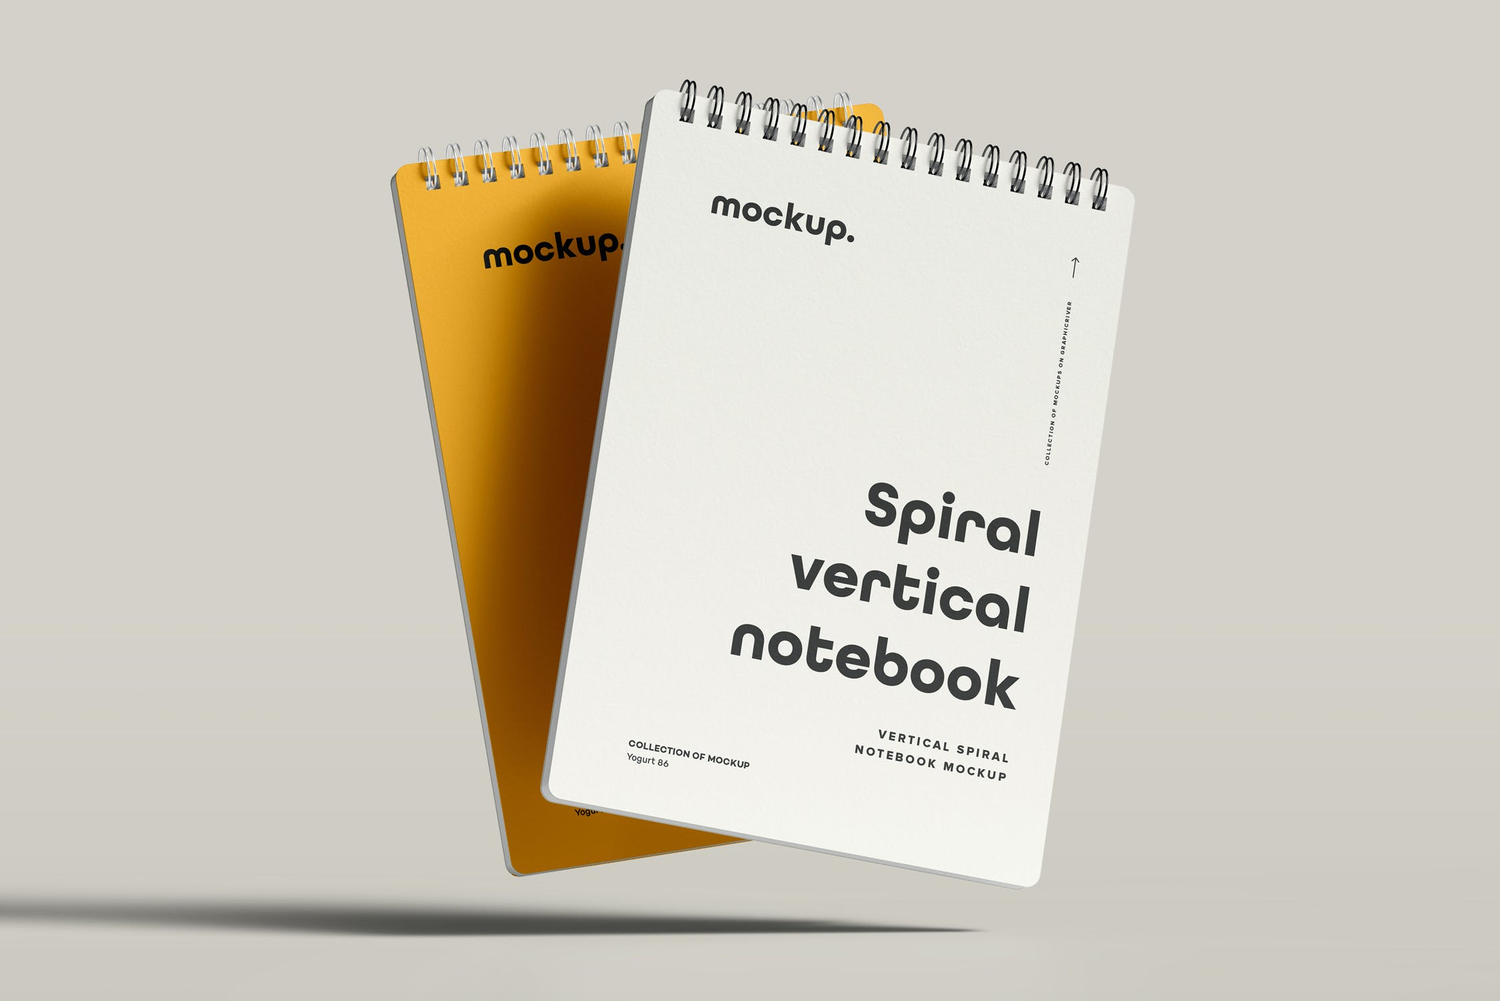 4765 线圈笔记本记事本文创文具封面设计作品贴图ps样机素材展示效果 Spiral Notebook Mock-up 2@GOOODME.COM